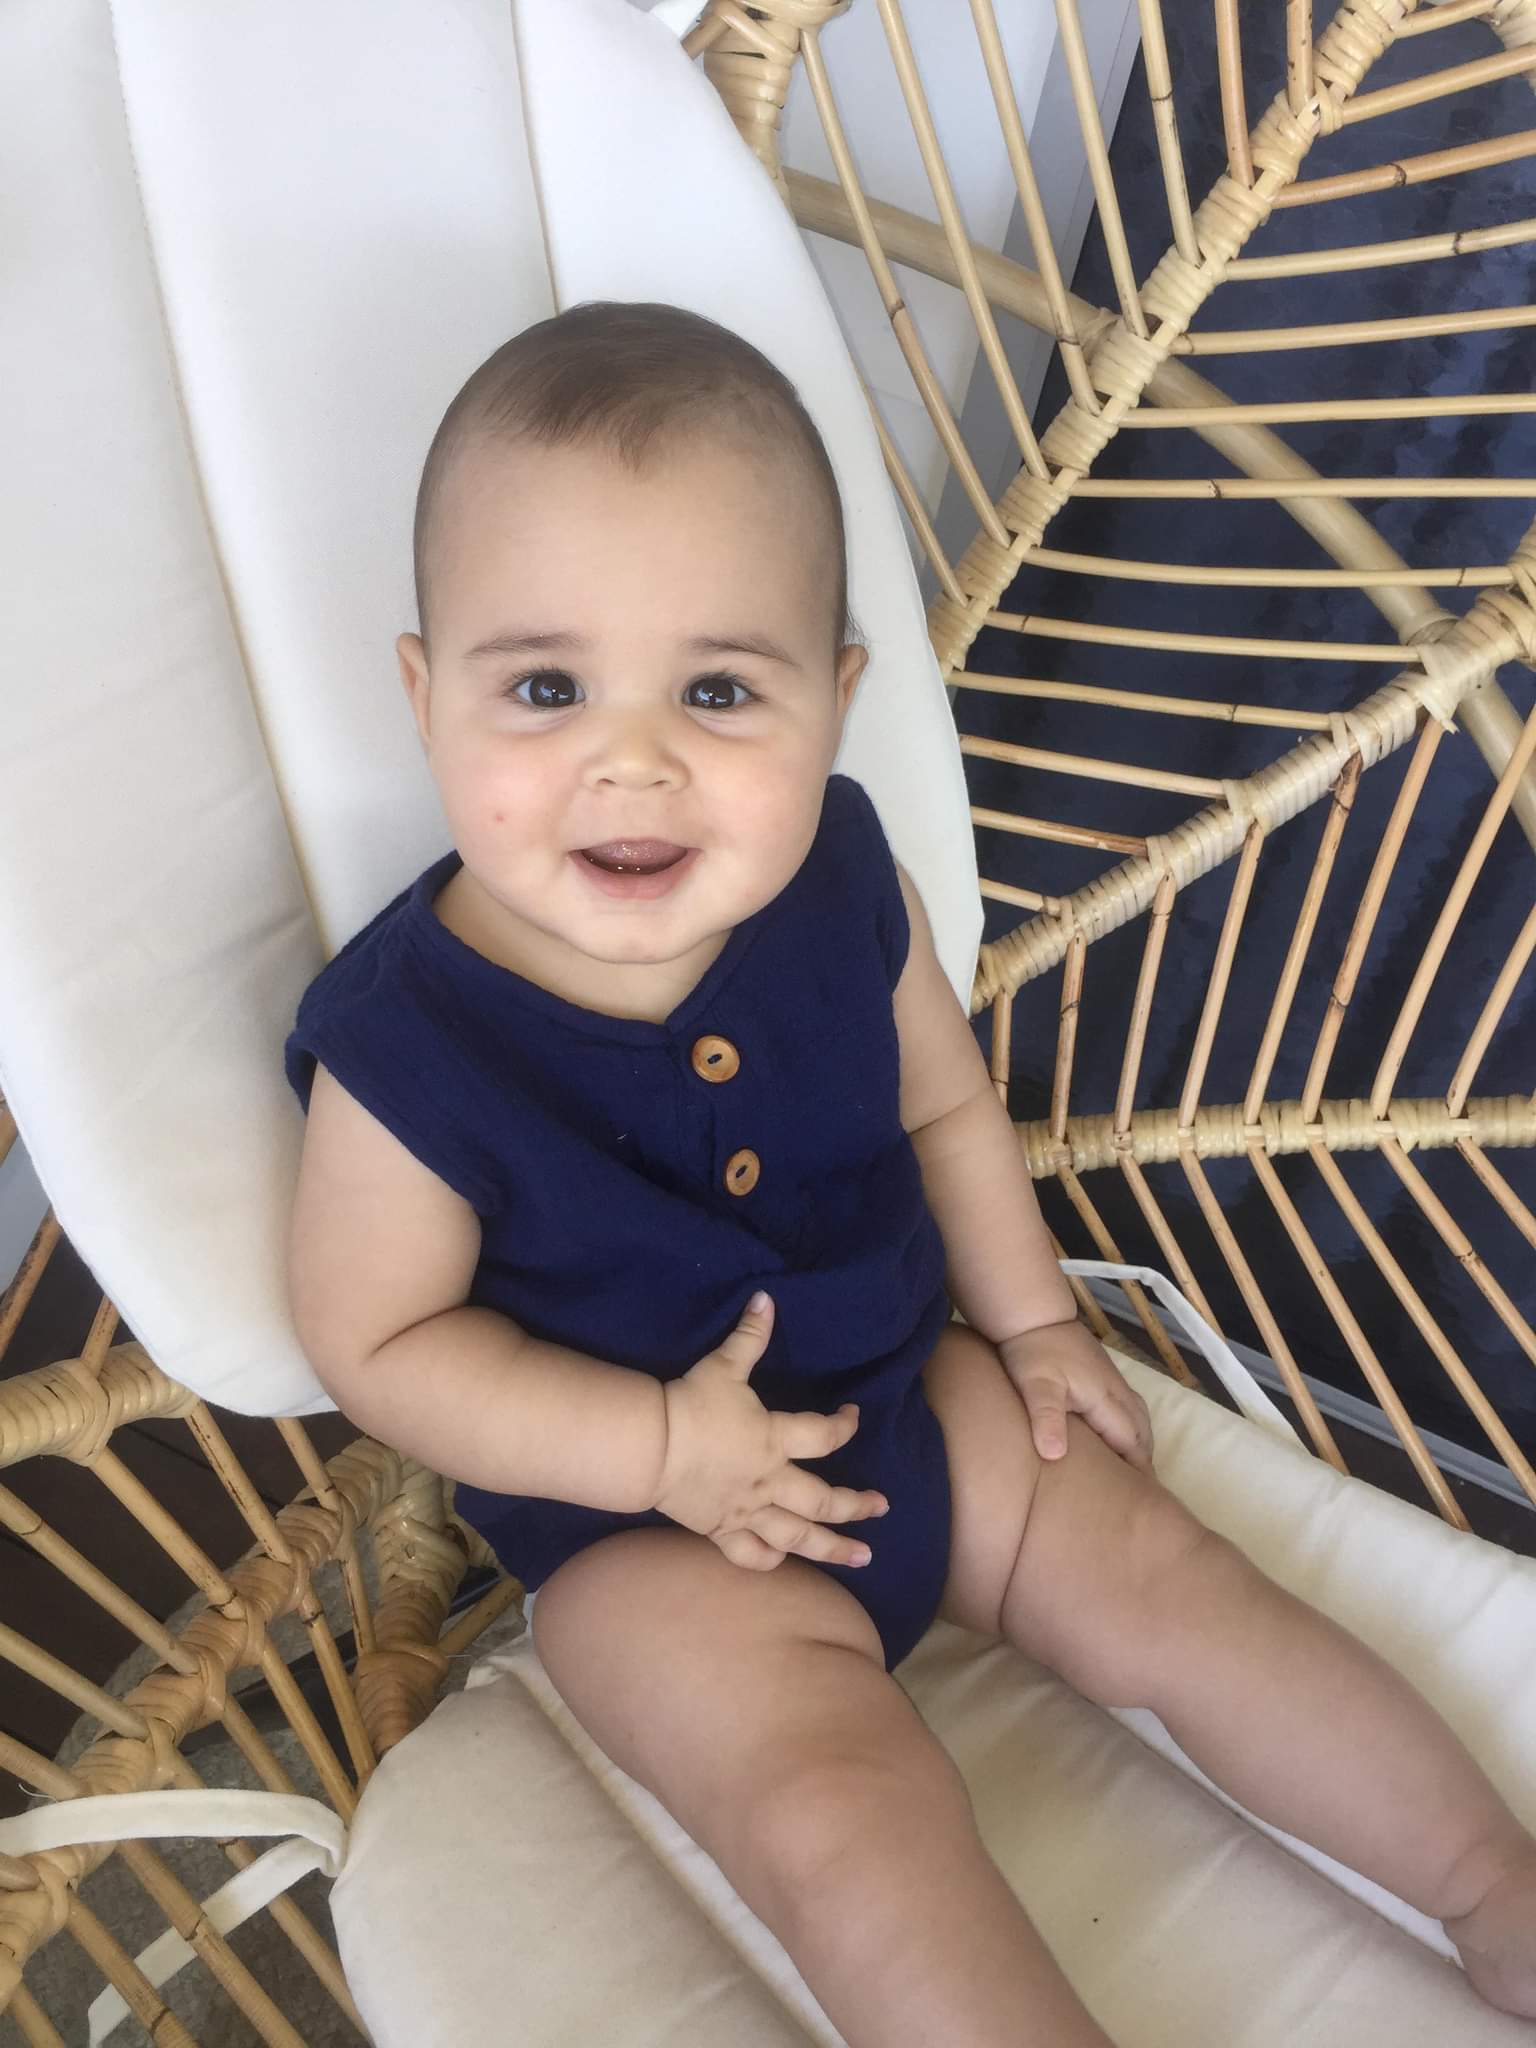 Neutral Baby romper navy onesie jumpsuit organic cotton Australian made